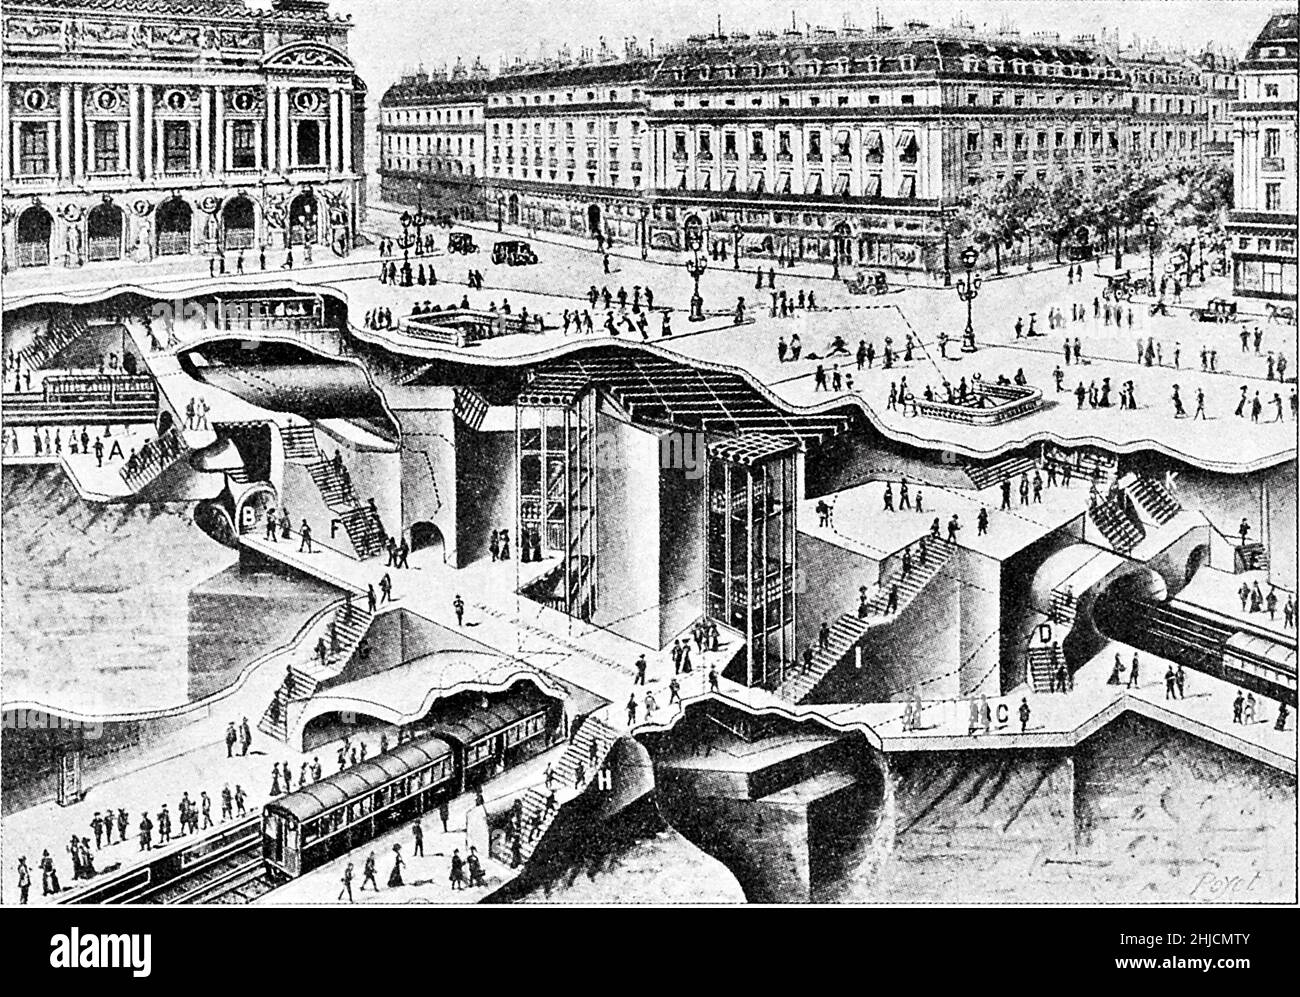 Ausschnitt-Abbildung, die den Bahnhof Op√©ra der Pariser Metro im Jahr 1913 zeigt, der vom Architekten Charles Garnier erbaut wurde und den Stadtteil Boulevard Haussmann bedient. Stockfoto